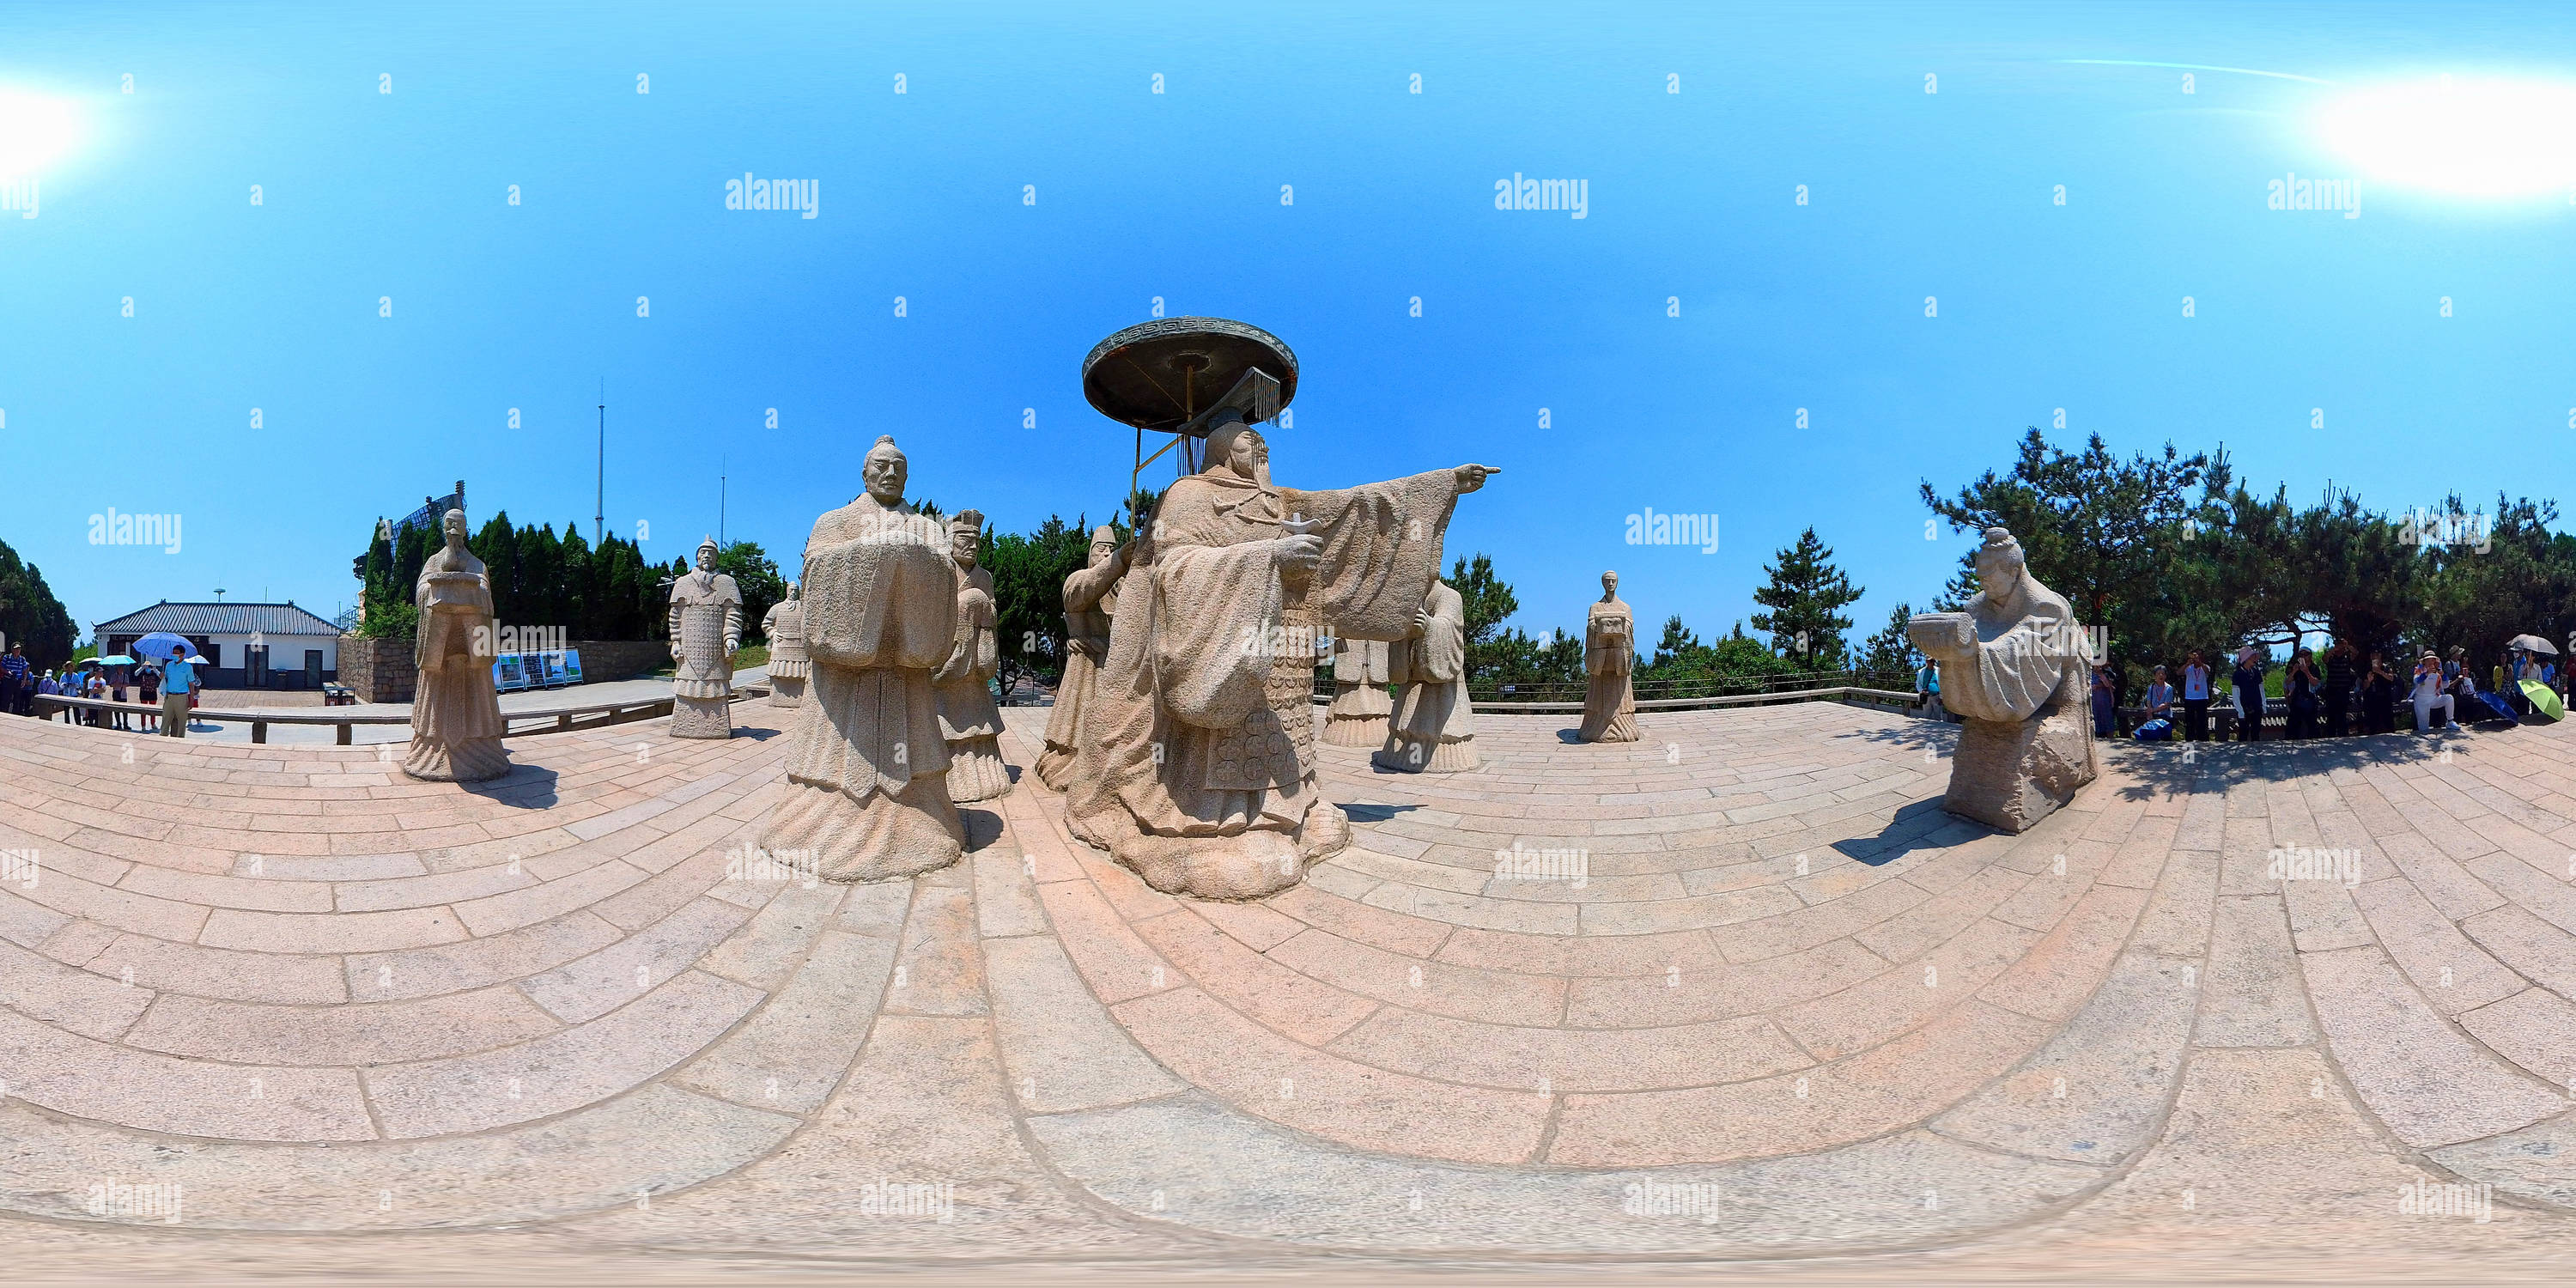 360 Grad Panorama Ansicht von Lonagyatai hat eine lange Geschichte.